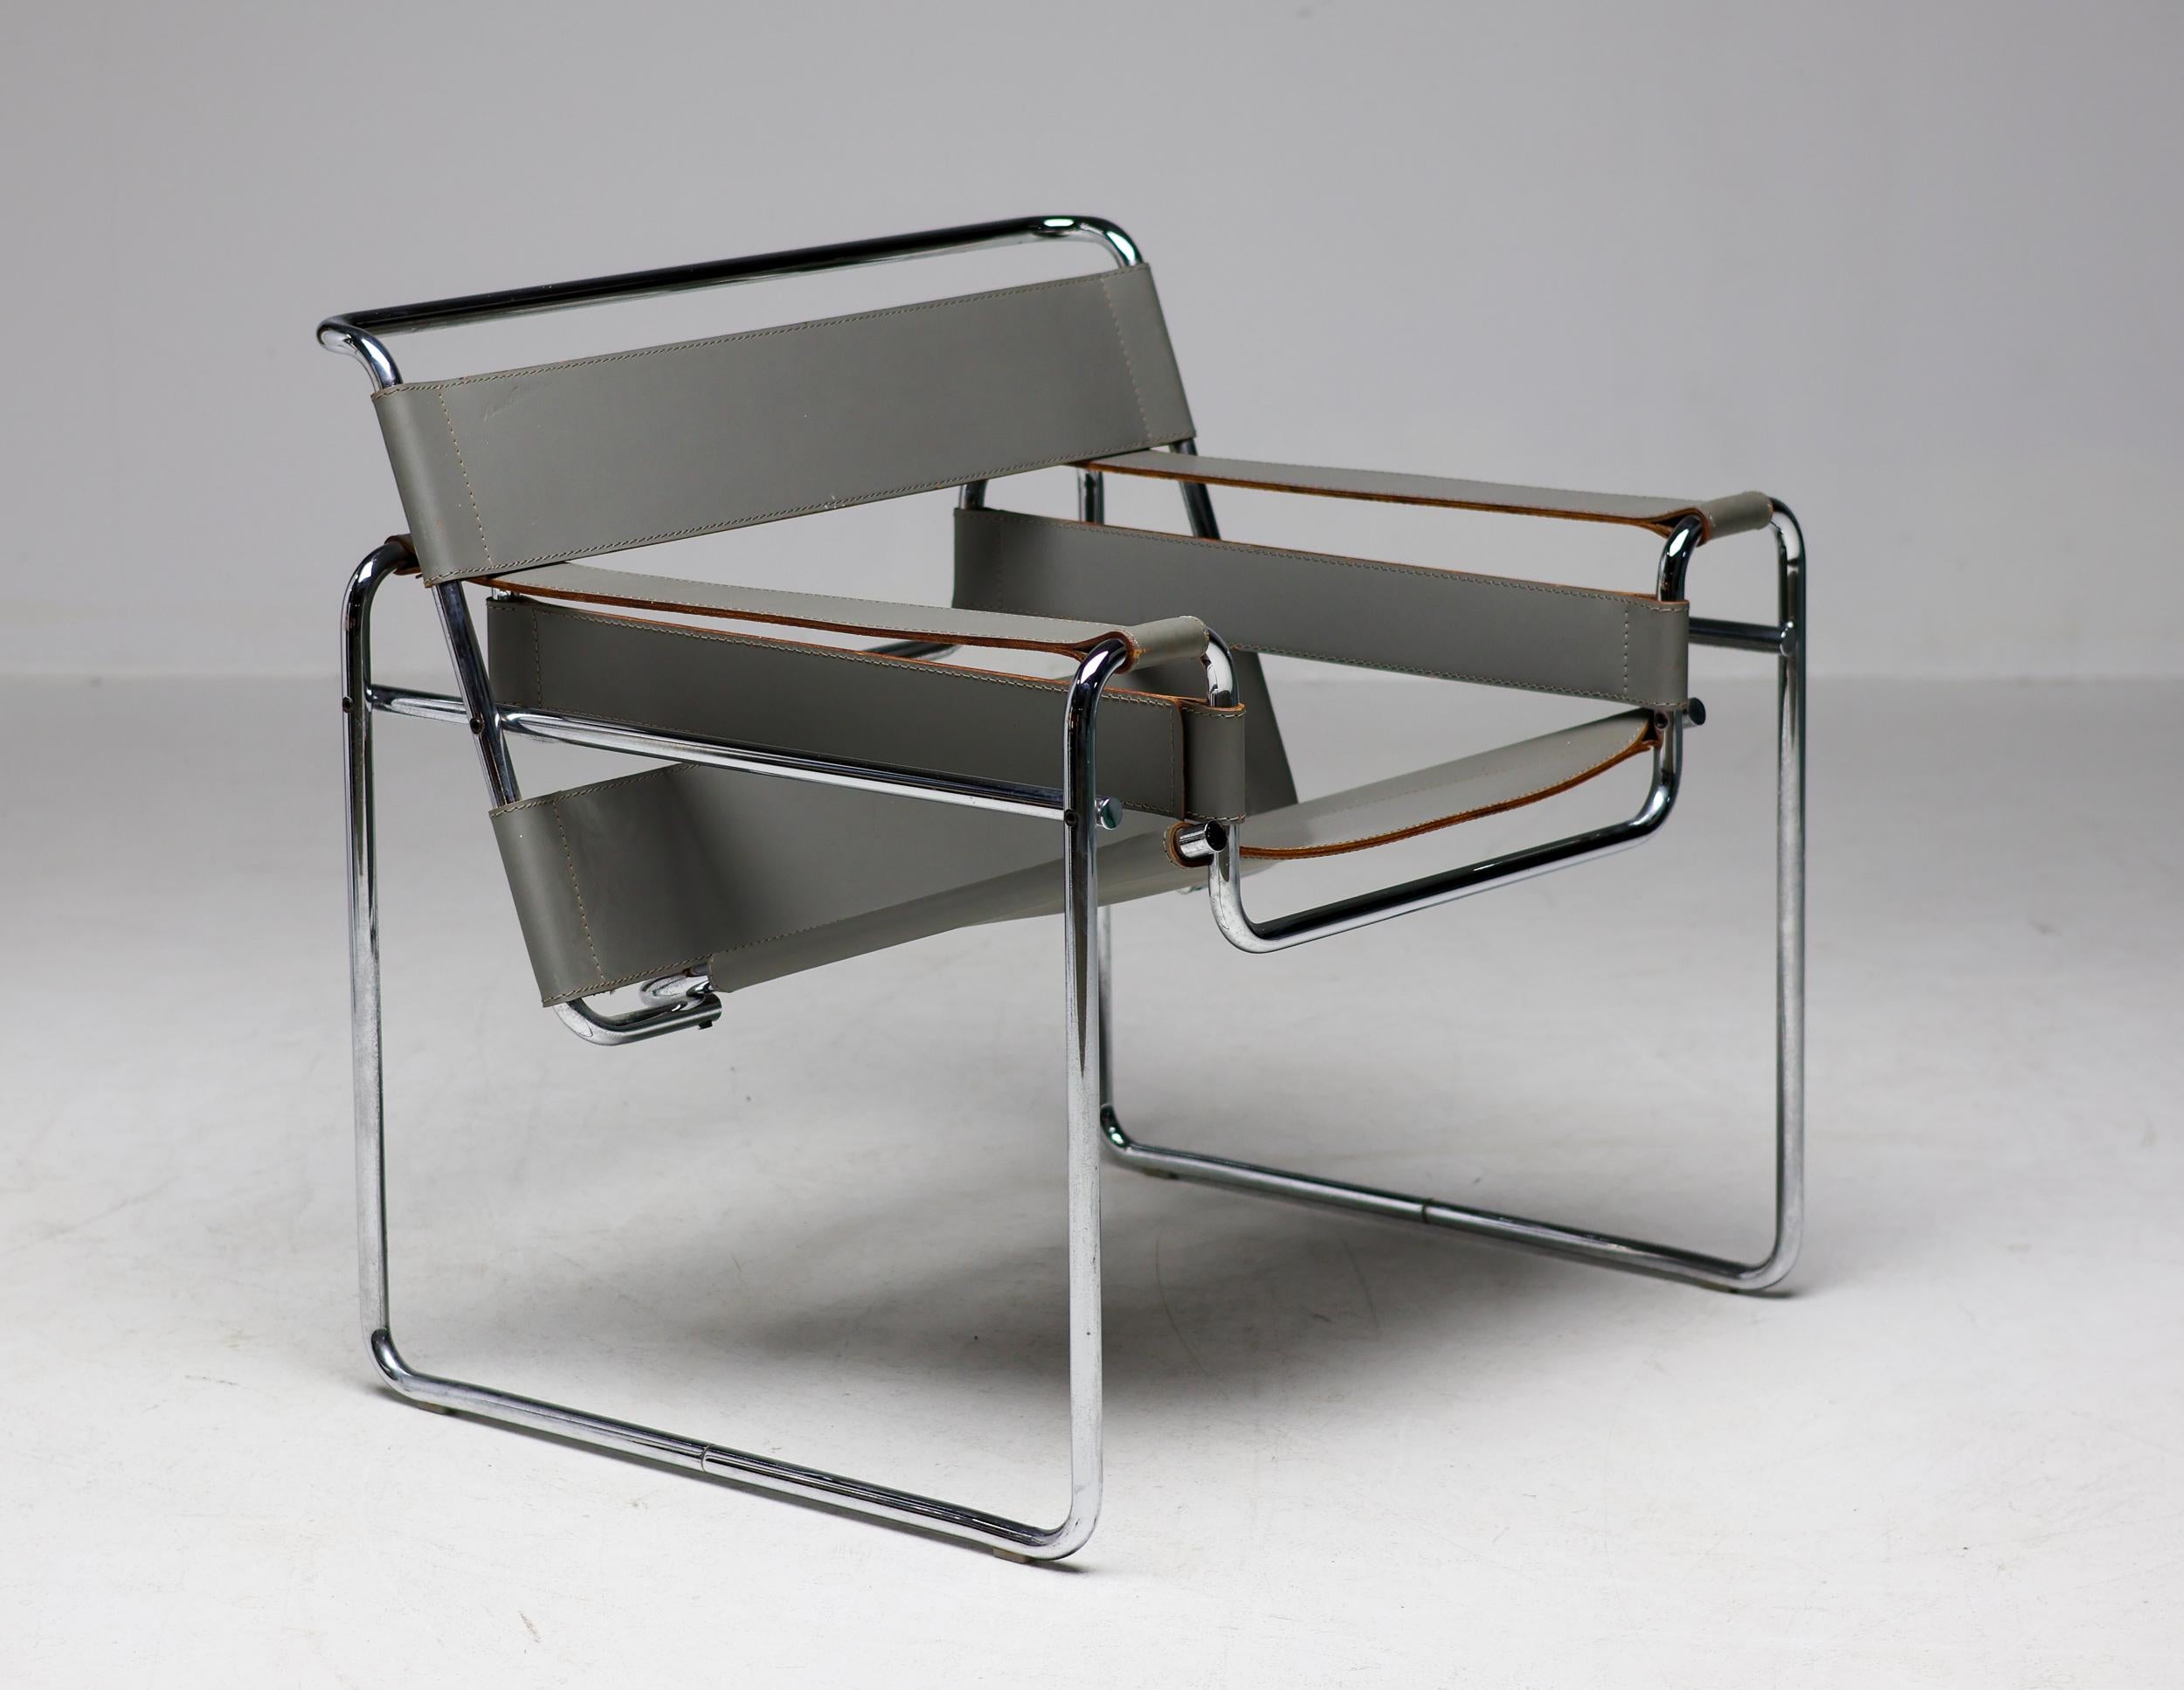 Paire unique de chaises Wassily en cuir gris, d'origine, conçues par Marcel Breuer, vers 1925. 
Fabriqué vers 1960 par Gavina en Italie.  Fabriqué en cuir gris avec un cadre en acier tubulaire chromé. 
Les bords du cuir présentent la couleur brune